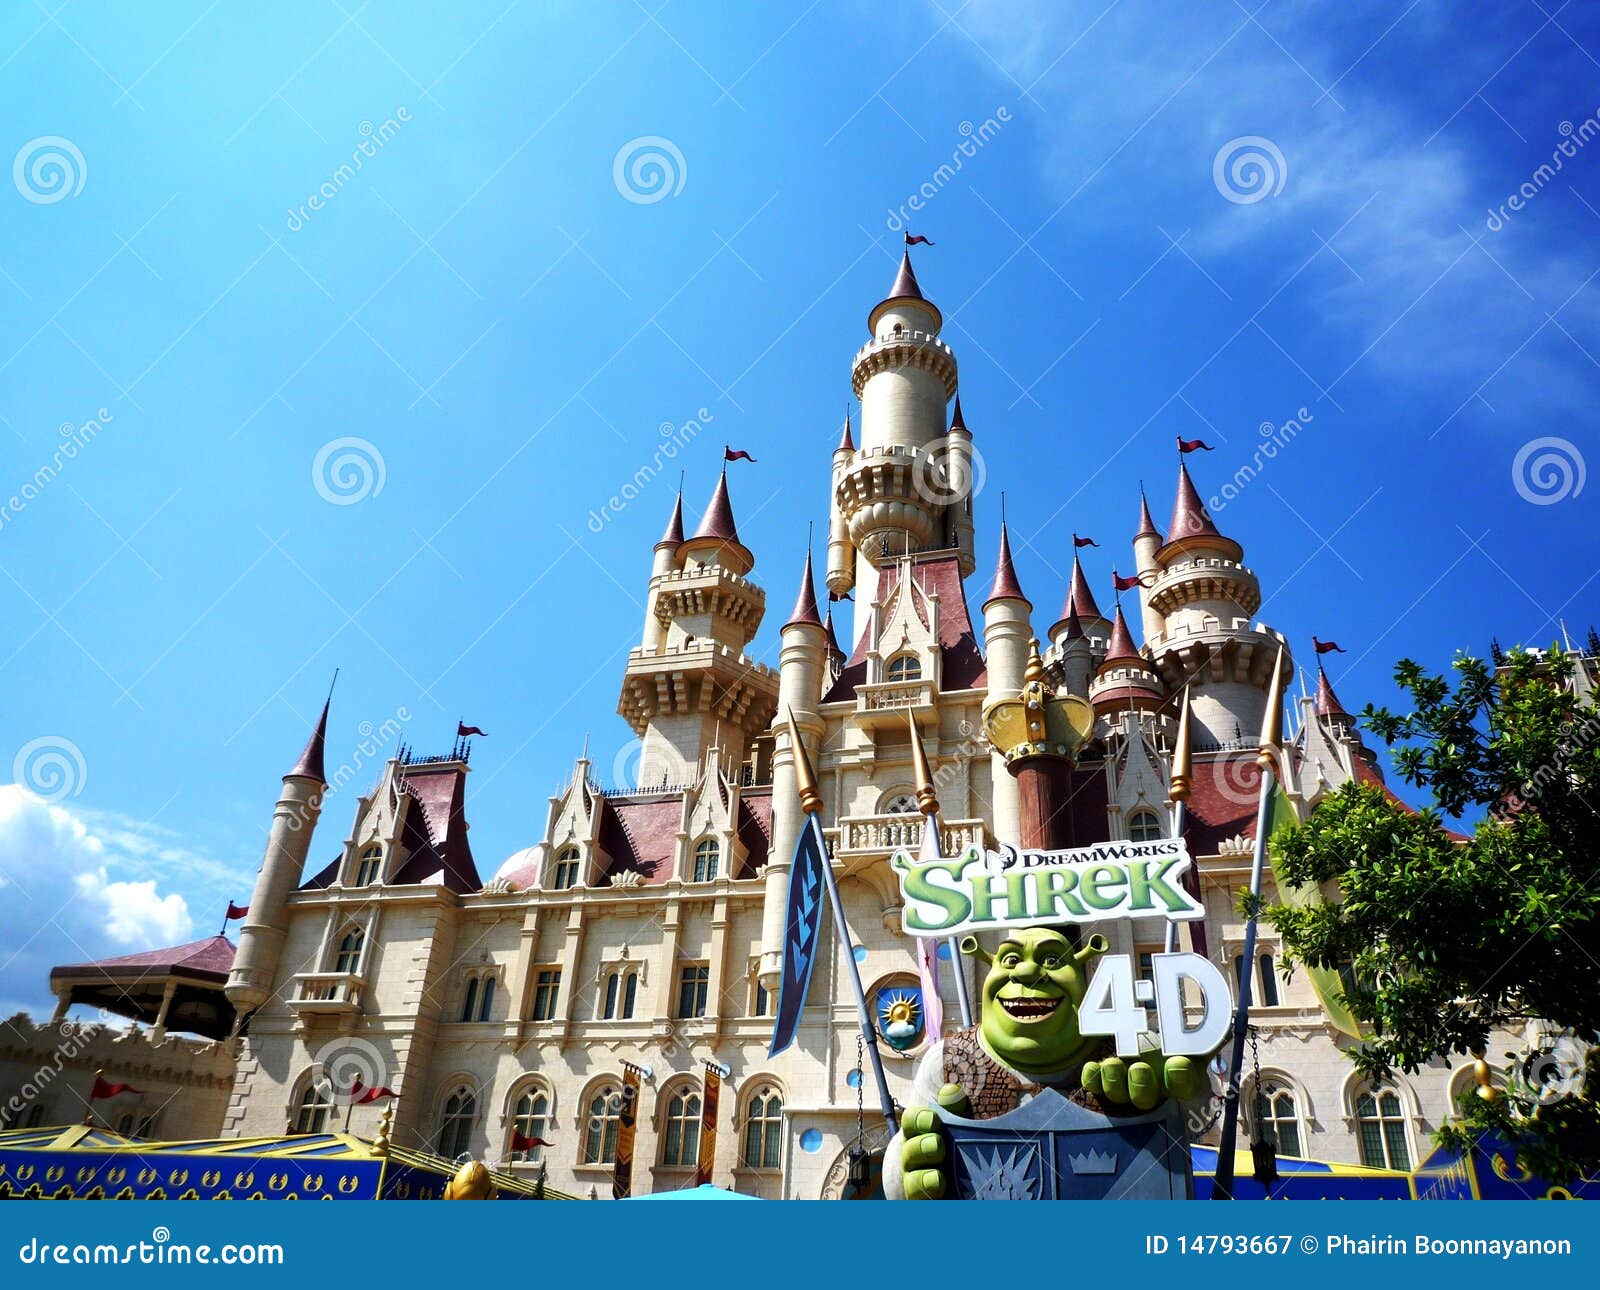 Shrek far far away hi-res stock photography and images - Alamy